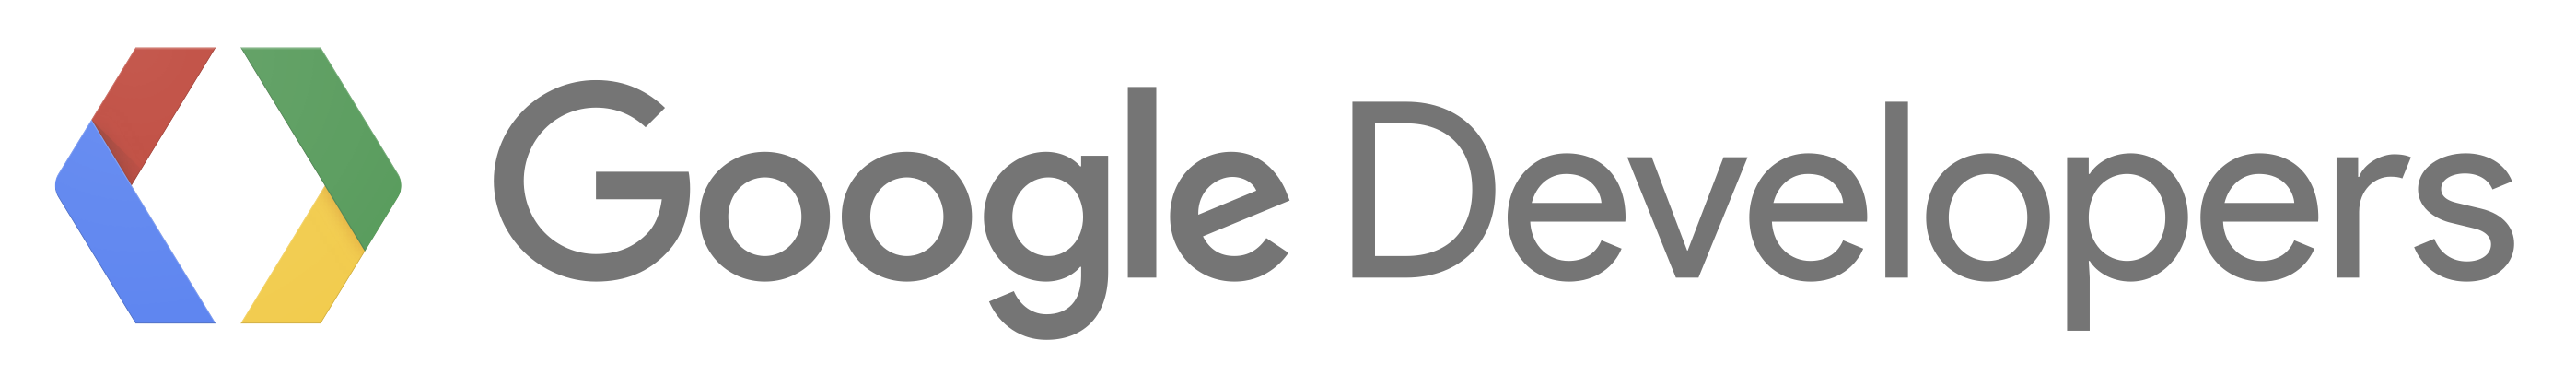 Google Developers Logo PNG - 100649